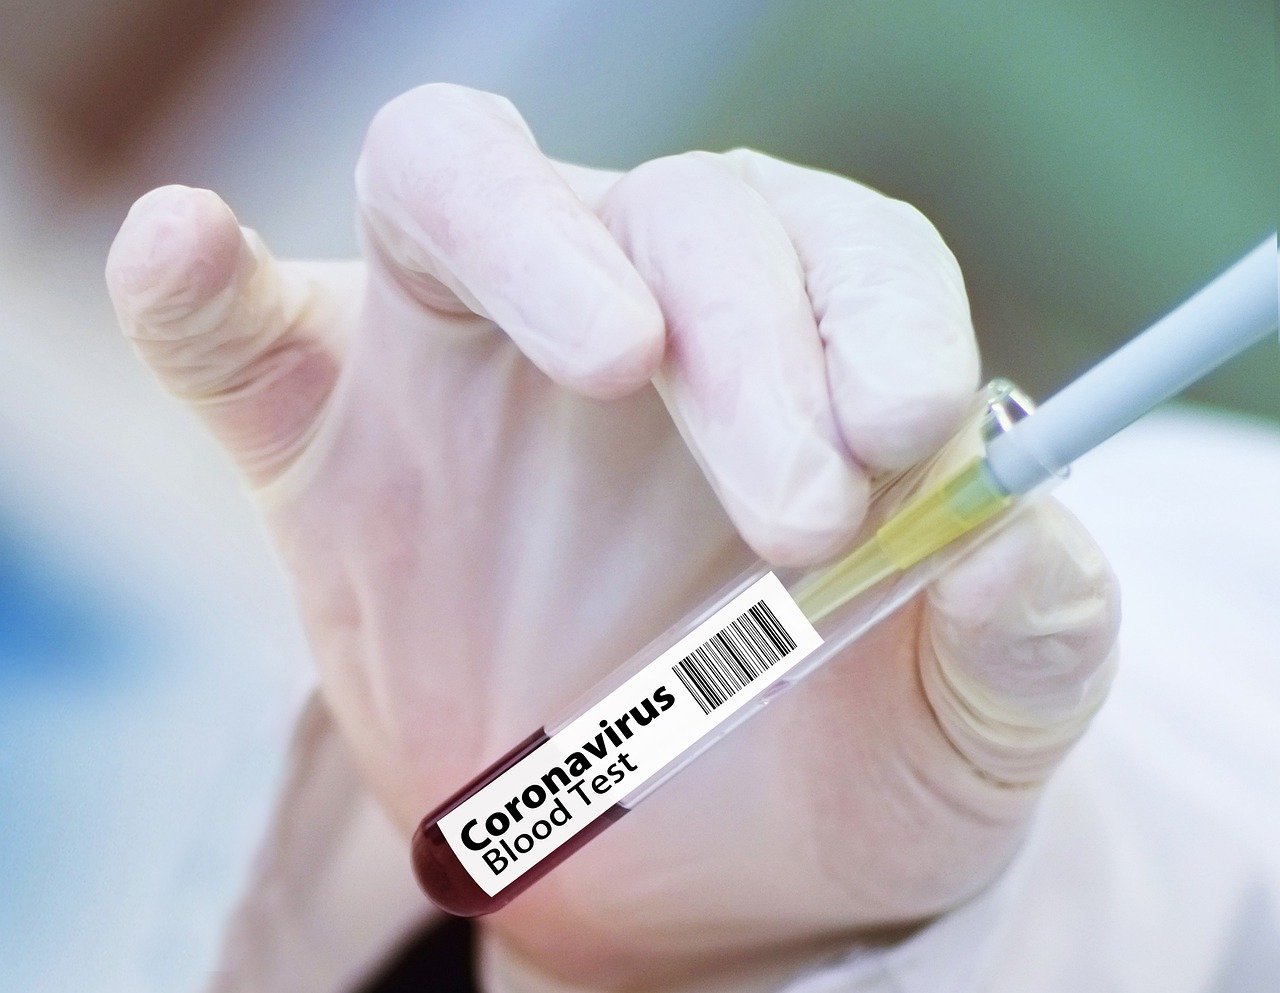 Coronavirus, in Toscana 38 nuovi casi, 12 di rientri dall’estero